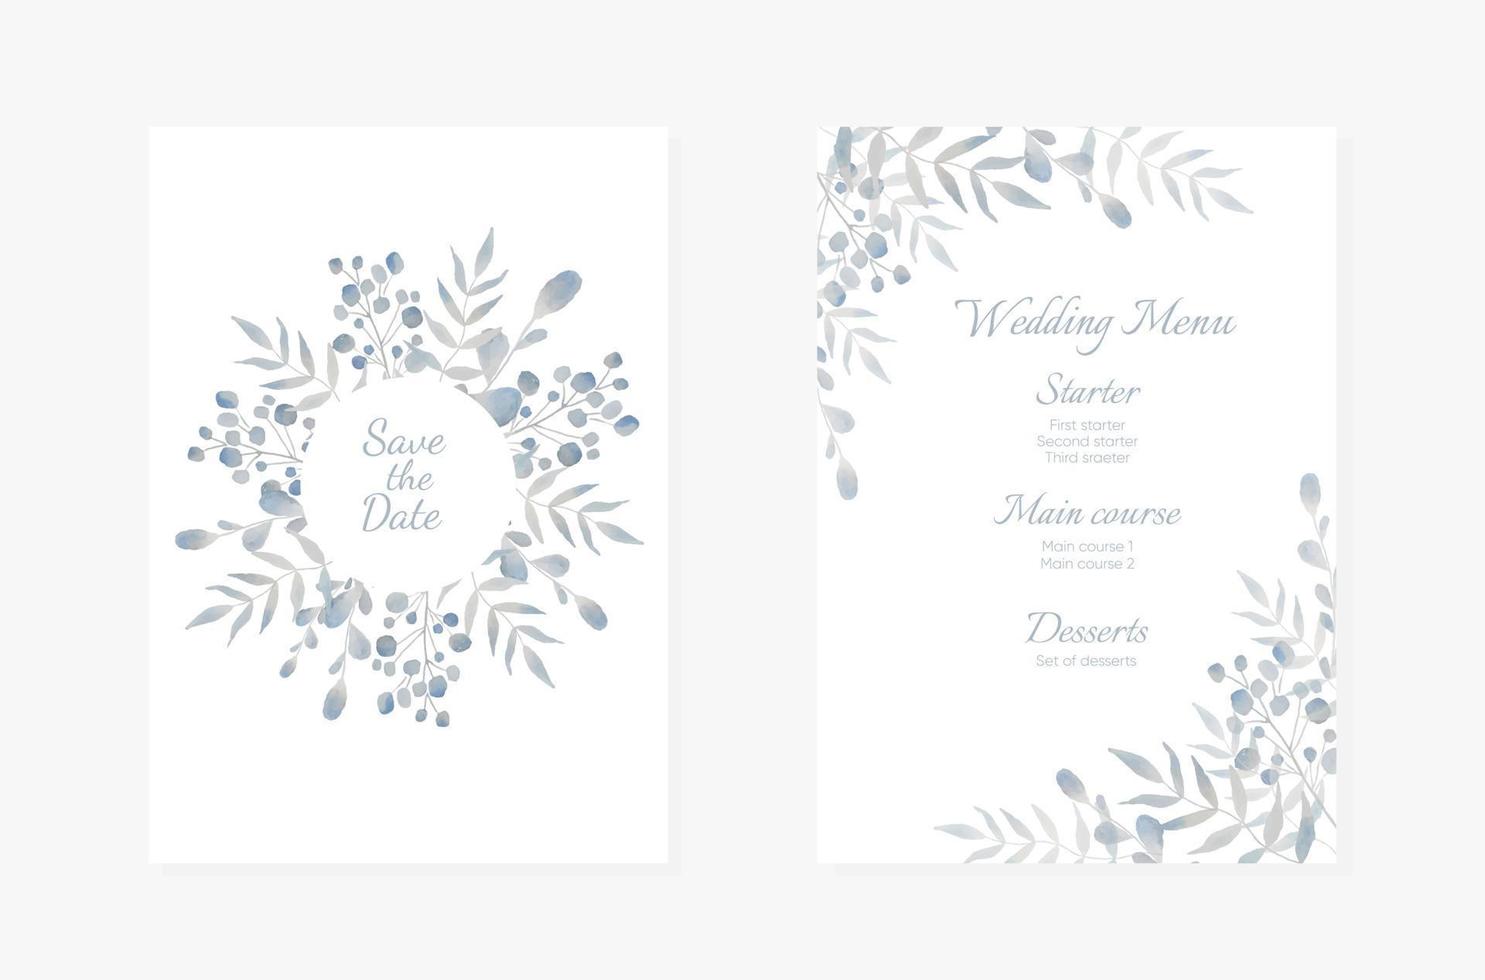 Einladungskarten zur Hochzeit. hellblaues aquarellstil-kollektionsdesign, einladungs- und menüvorlage. Vektor einladen.